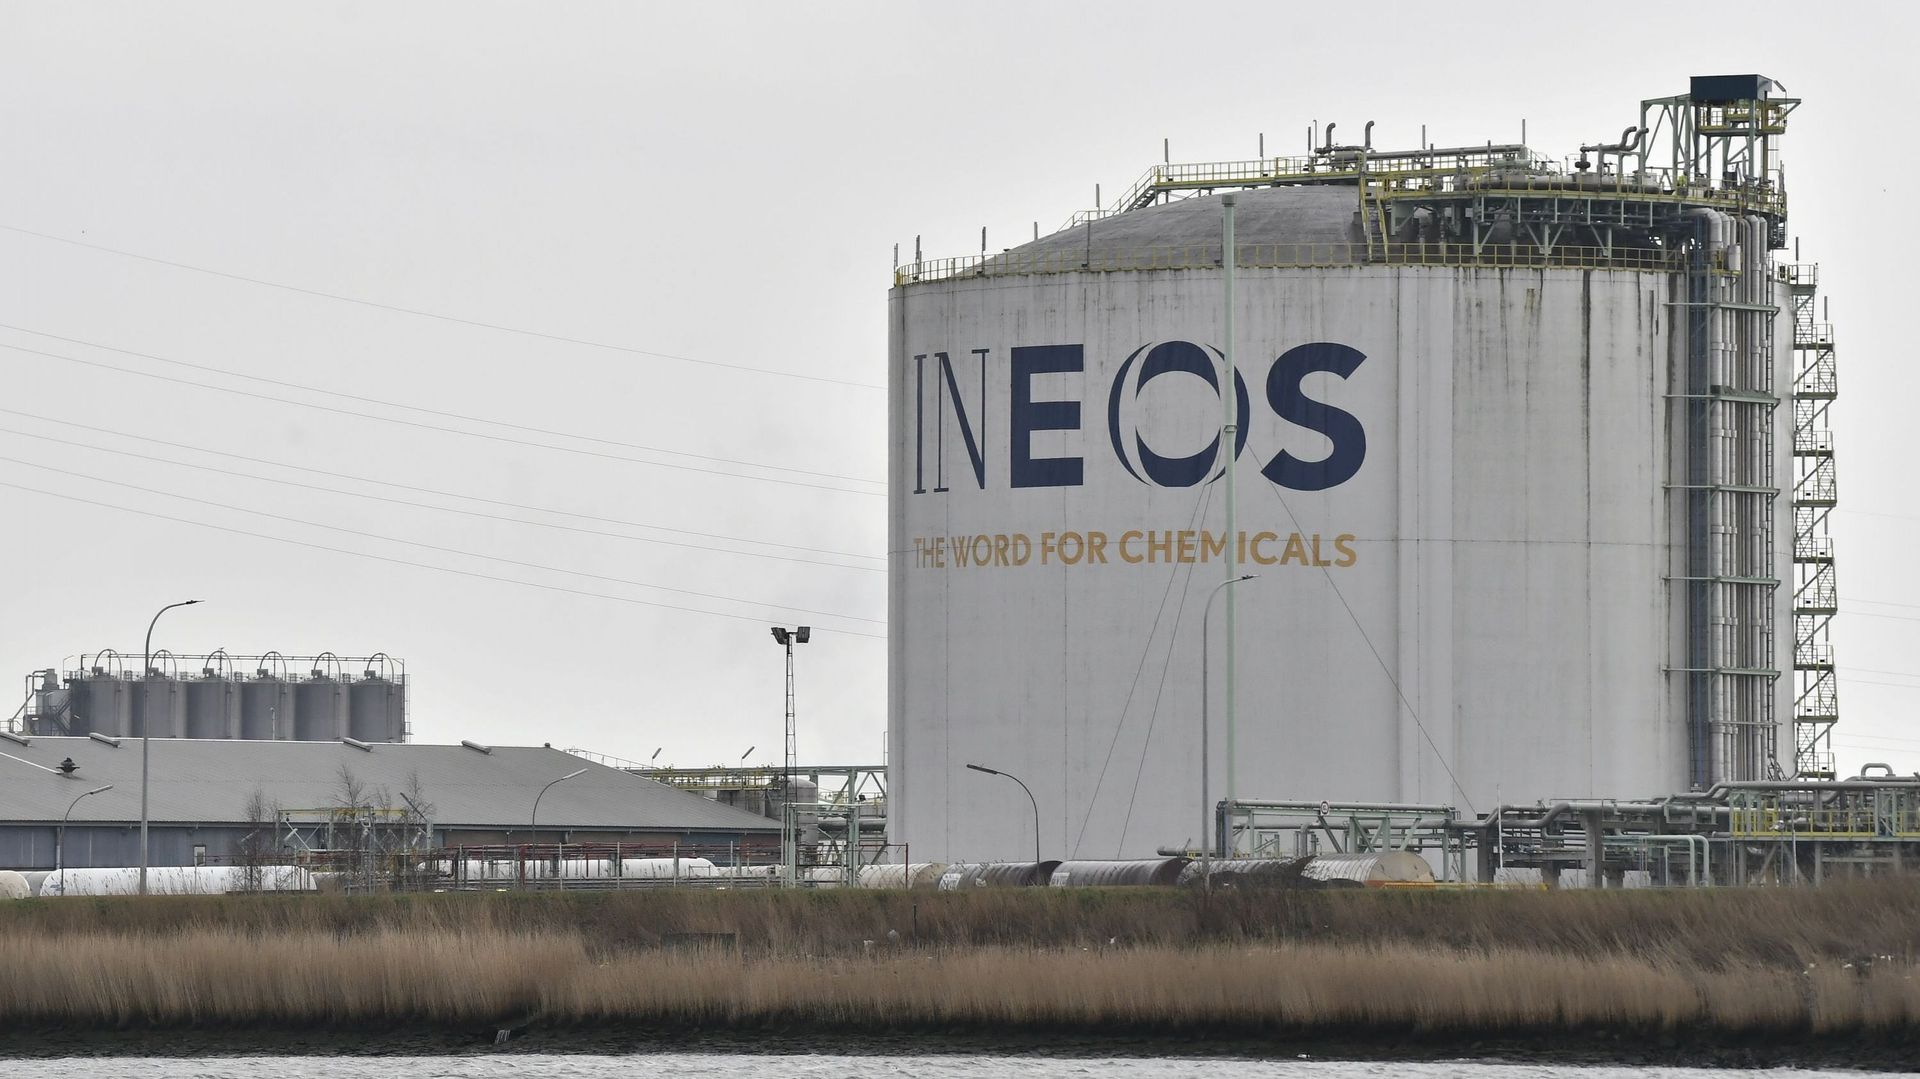 Action de militants climatiques sur un site de l'entreprise pétrochimique Ineos à Anvers